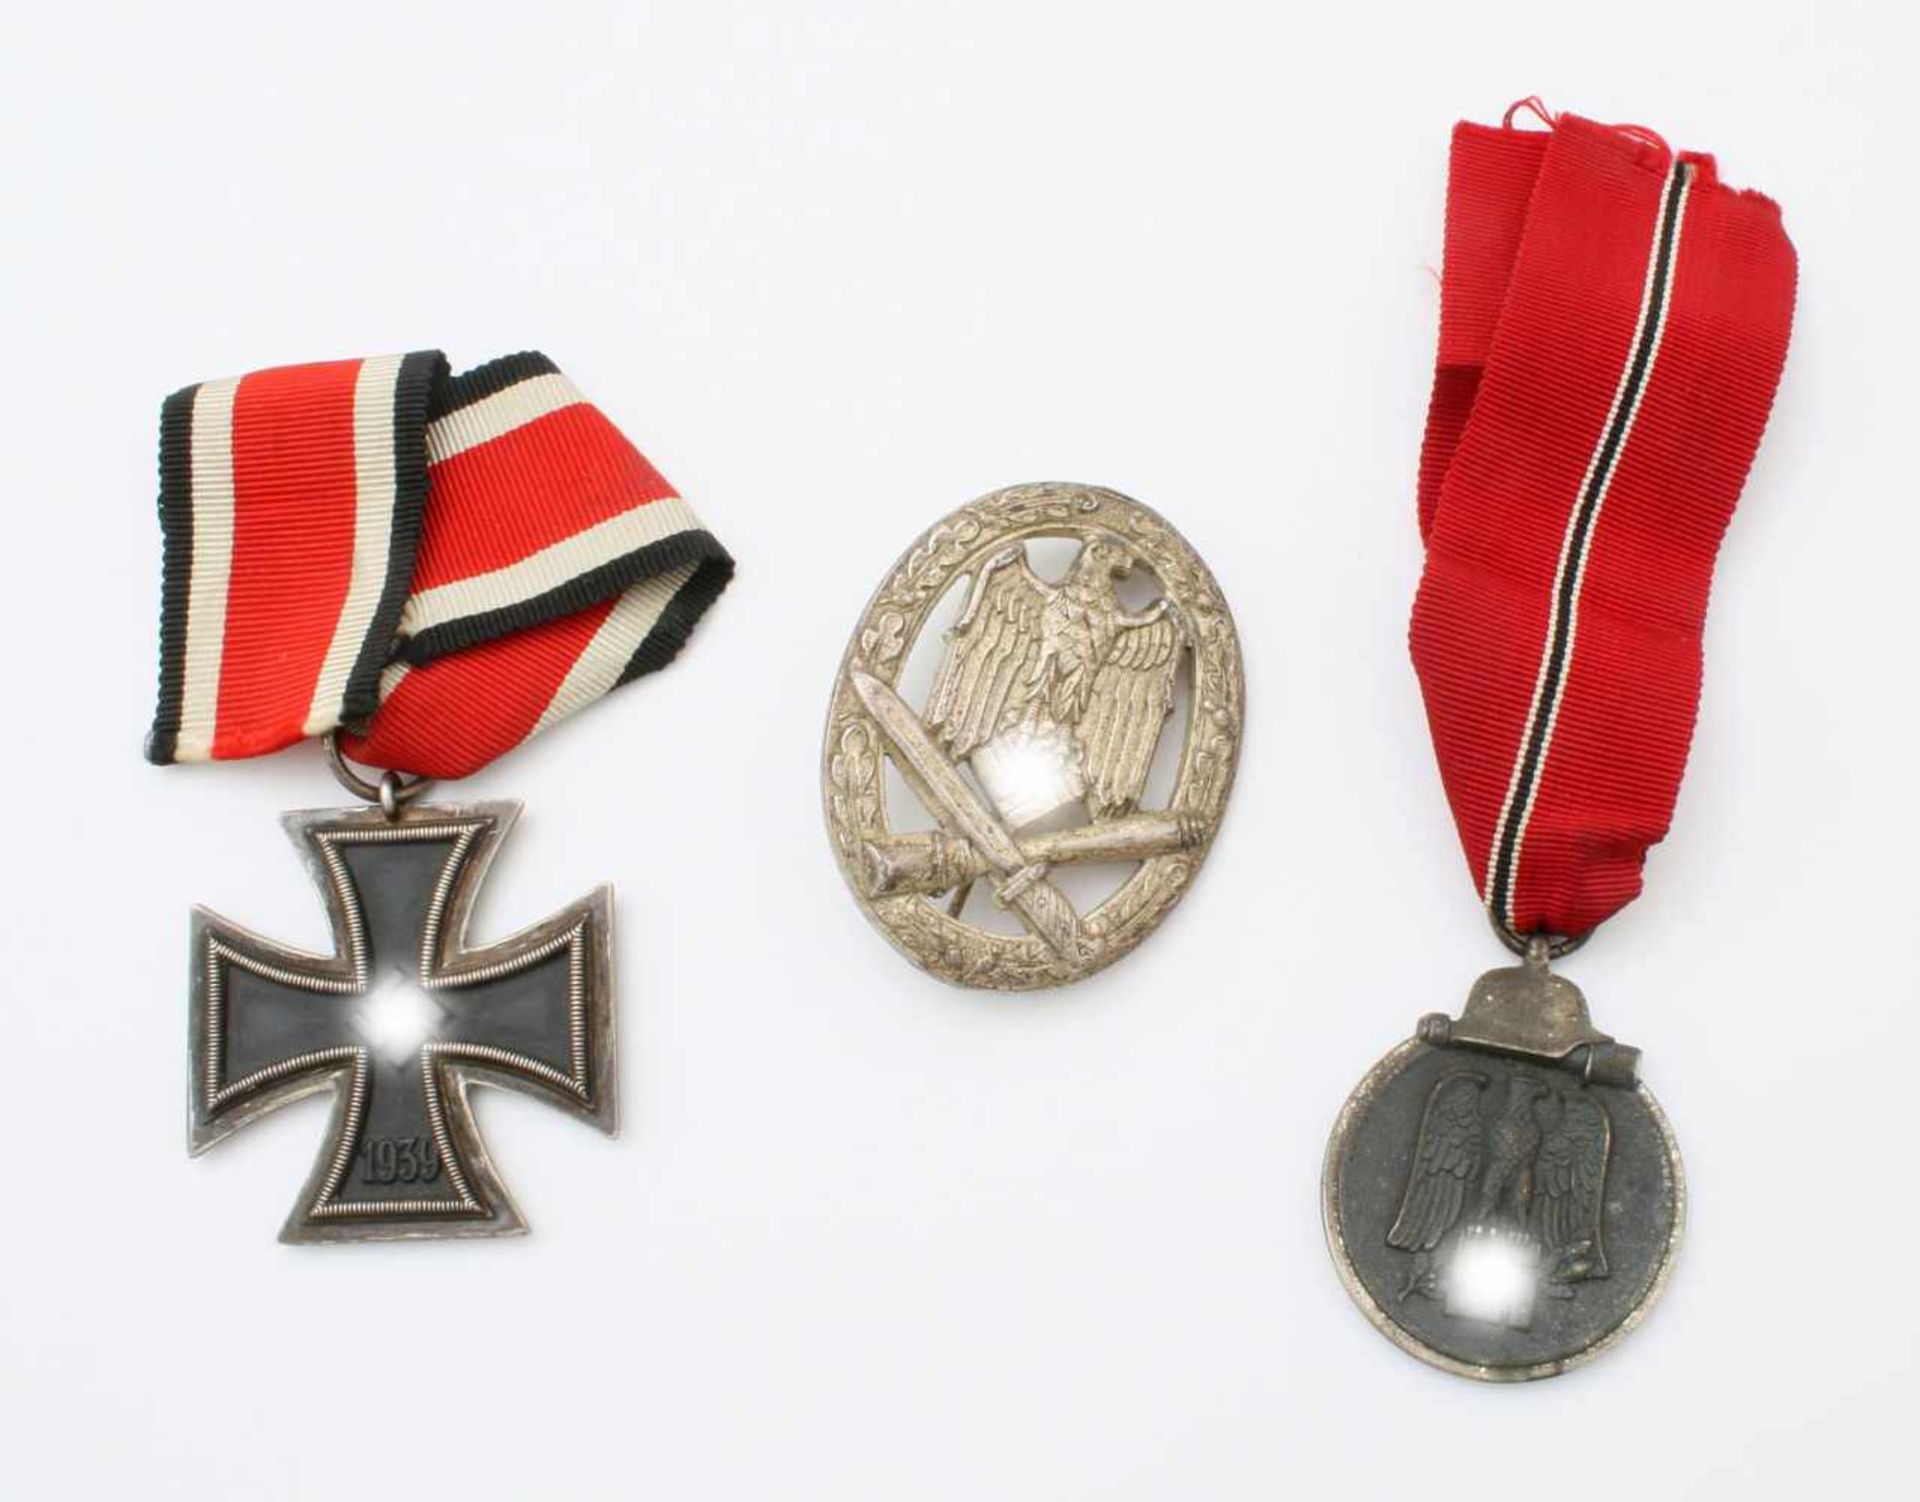 2. Weltkrieg - EK 2. Klasse 1939, Ostmedaille, Infanteriesturmabzeichen Infanterie Sturmabz. in